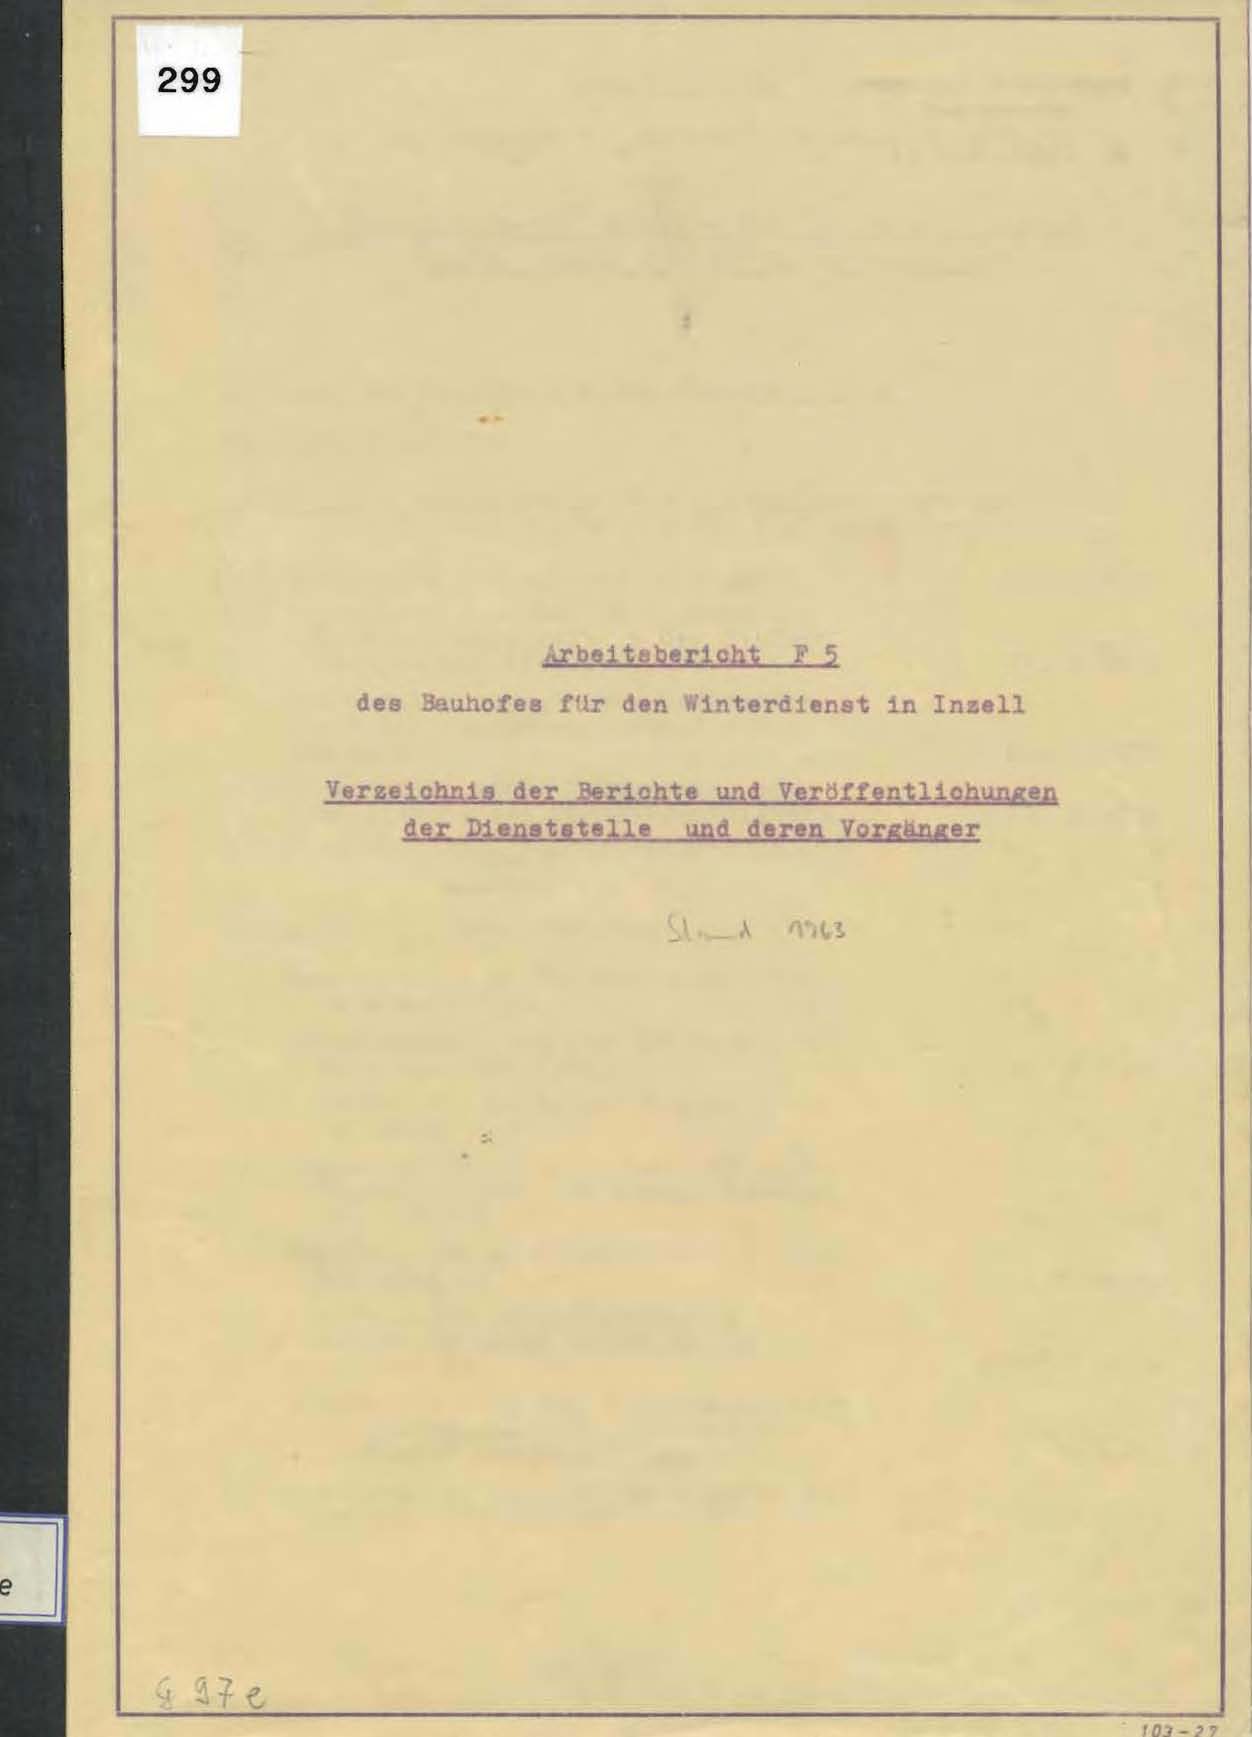 Arbeitsbericht F5 des Bauhofes für den Winterdienst in Inzell 1963